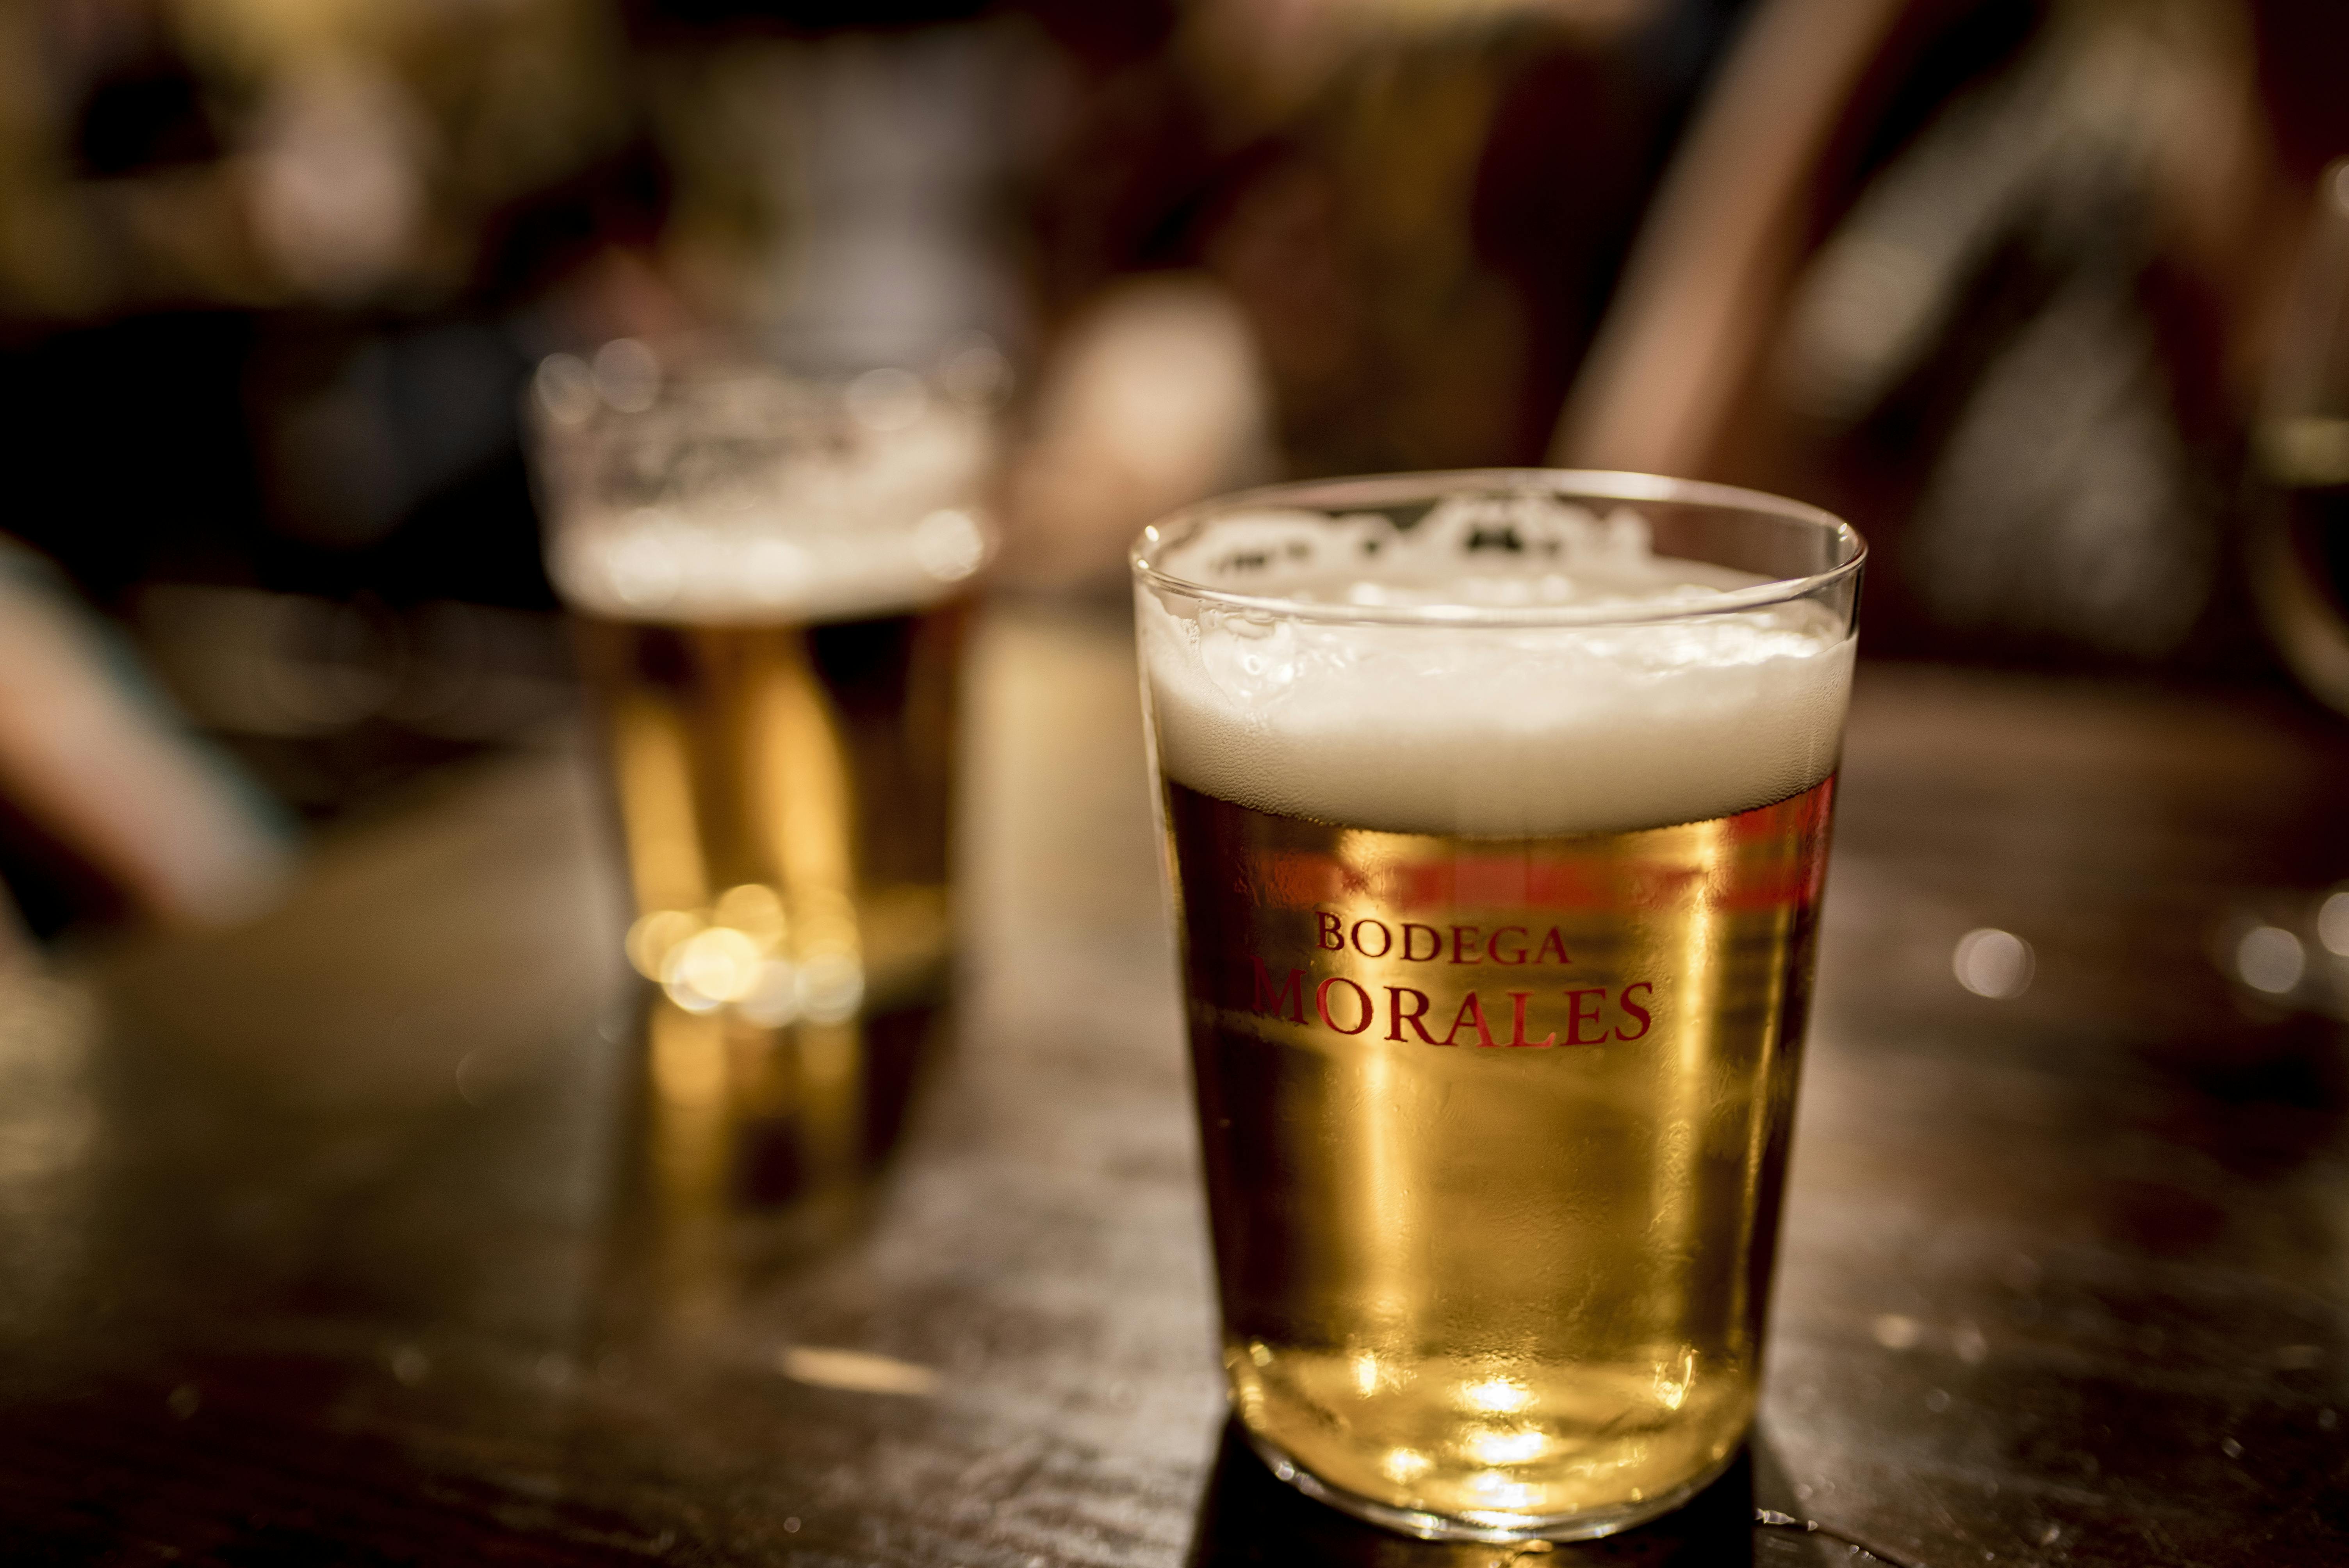 Kostenloses Foto zum Thema: alkoholisches getränk, bar, bier